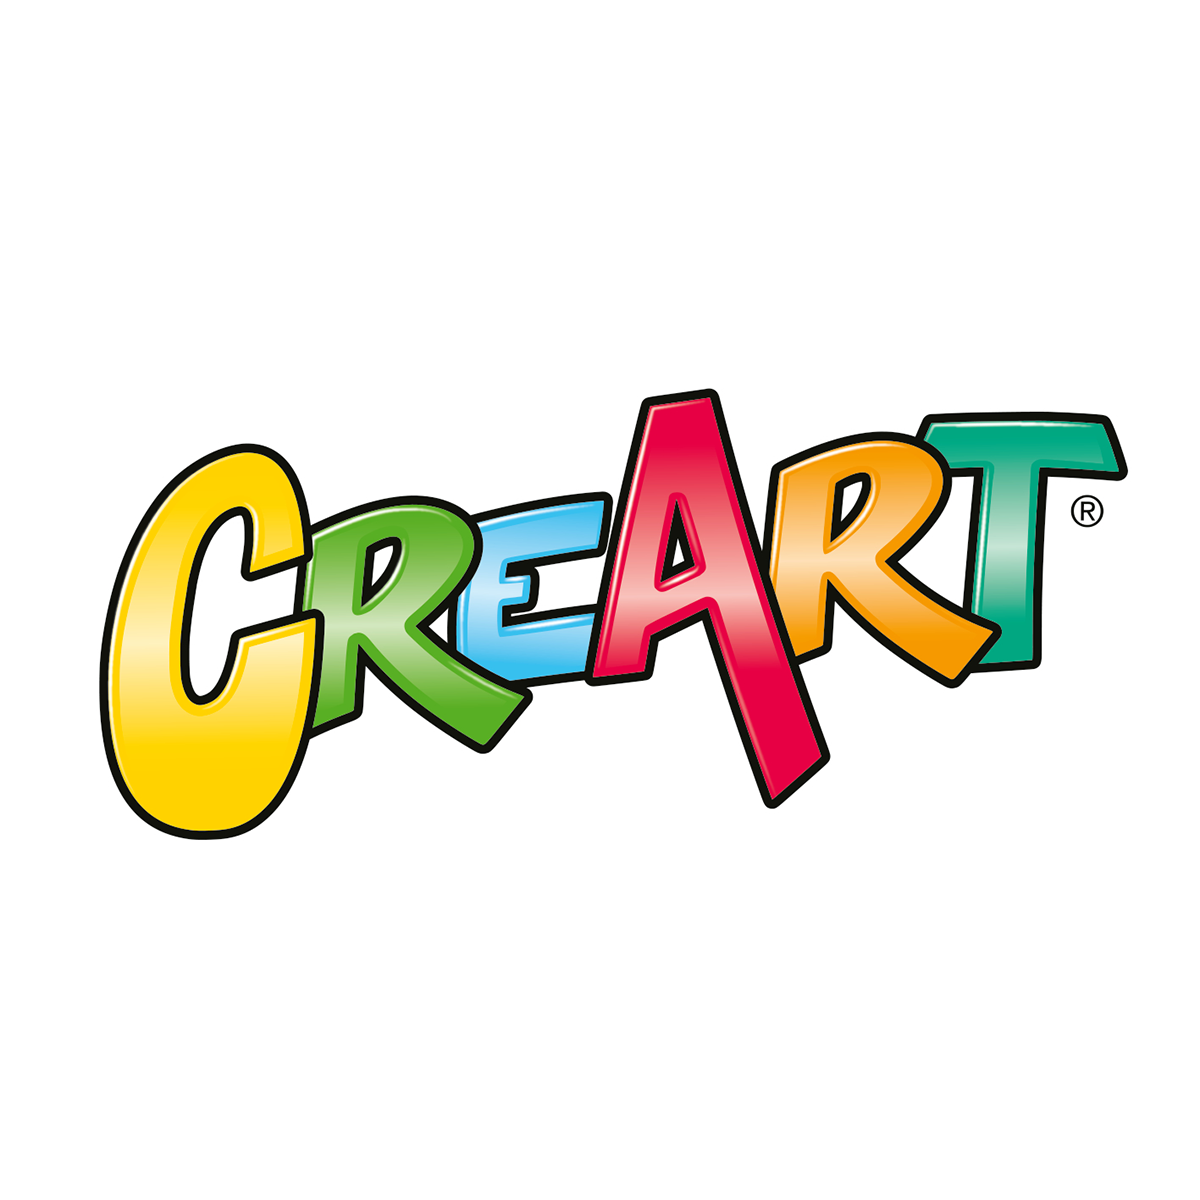 CreArt Serie E Classic - Lupi al chiaro di luna, CreArt Bambini, Giochi  Creativi, Prodotti, it